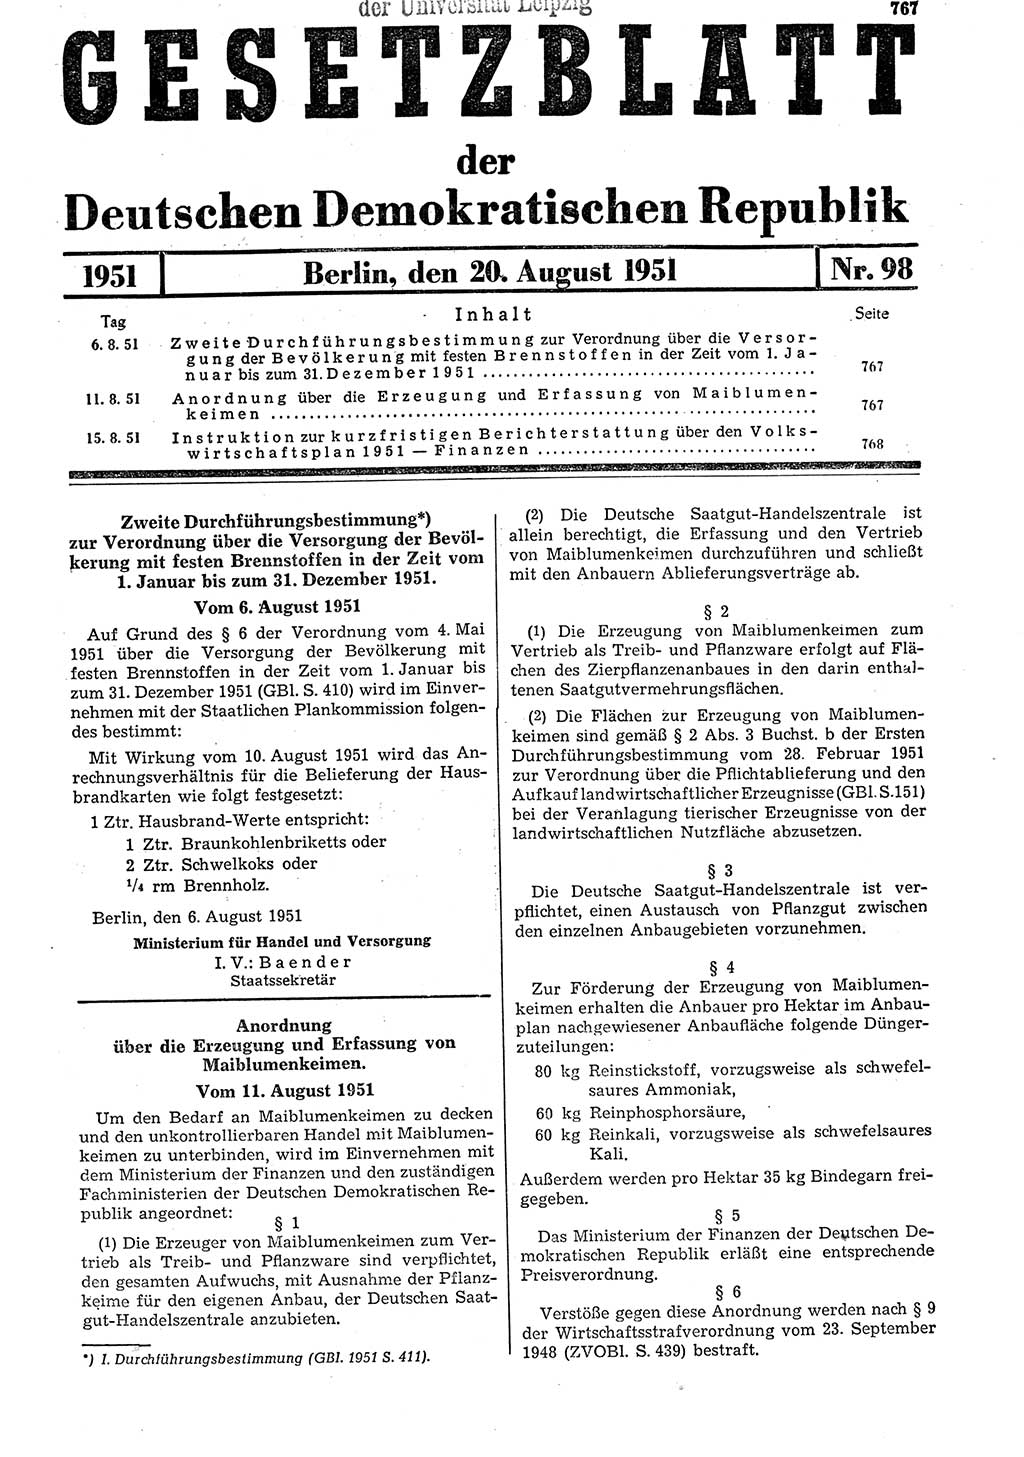 Gesetzblatt (GBl.) der Deutschen Demokratischen Republik (DDR) 1951, Seite 767 (GBl. DDR 1951, S. 767)